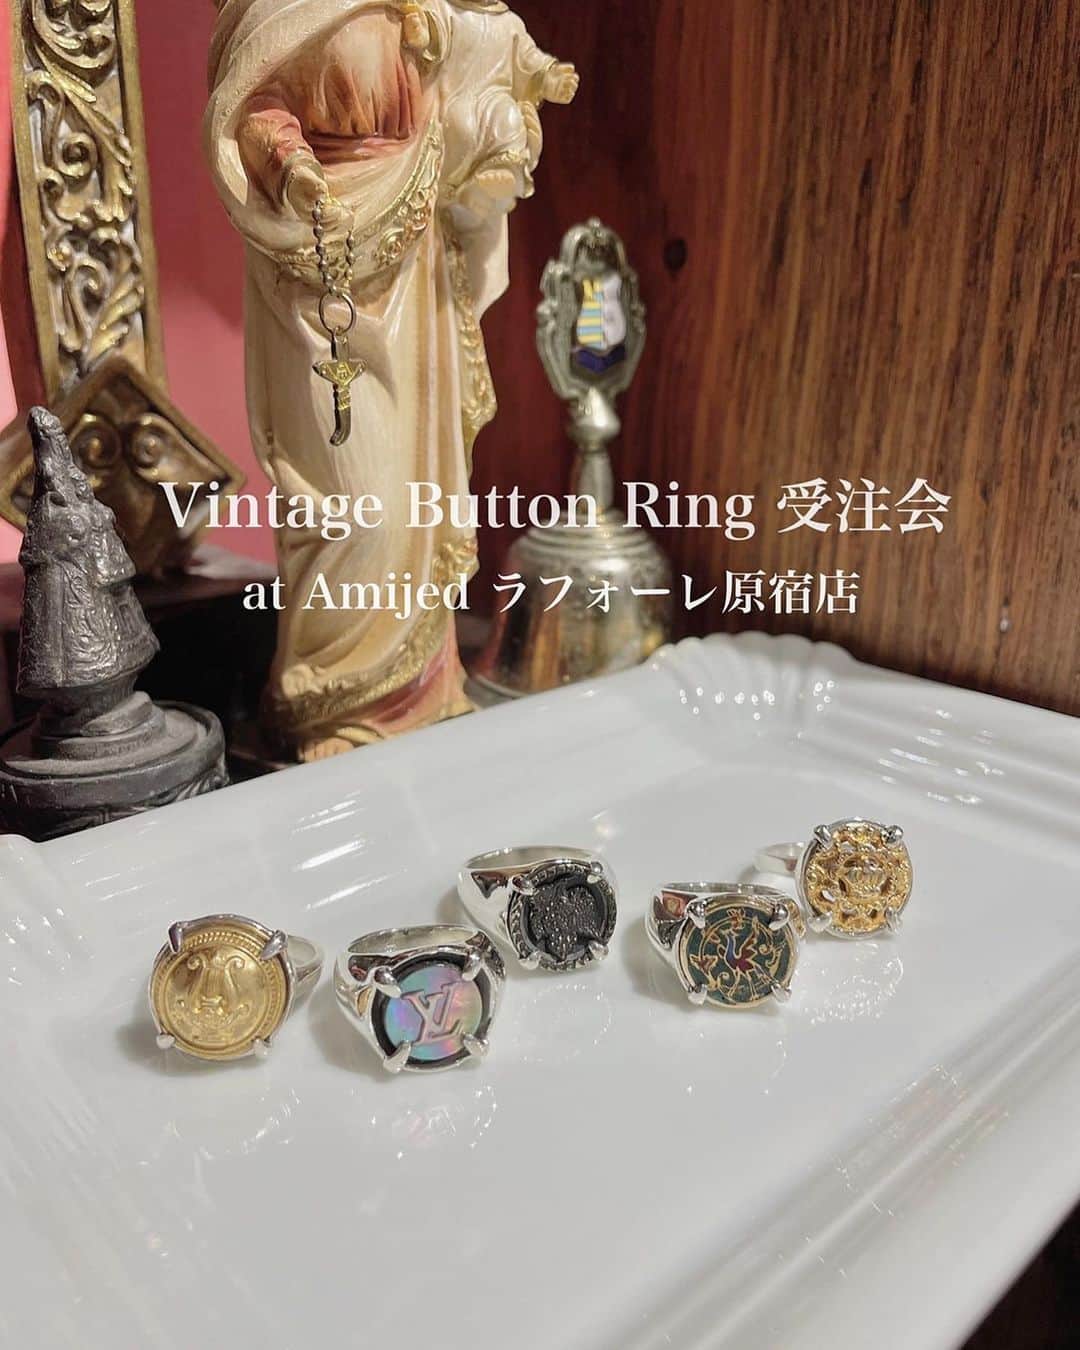 Amijed Officialのインスタグラム：「Vintage Button Ring 受注会 期間限定開催のお知らせ🎞  【Vintage Button Ring】 世界各国から集めたヴィンテージのボタンをお選び頂き、オリジナルのシルバーリングをお作り致します。店頭にてボタンをお選び頂き、リングサイズと併せてオーダーを受付いたします✴︎  【受注期間】 5/24(水)-5/30(火) open 11:00-20:00 at ラフォーレ原宿2F Amijed  【店頭にて受付】 受注から2〜3週間後にお届けとなります🕊 ※店頭でお受け取り又は郵送にてお届け  【Ring Size】 8号-24号 お持ち込みのボタンも相談可能です。 お気軽にDMまたは店頭にお持ち込みくださいませ🌿  みなさまのご来店、心よりお待ちしております🦚」